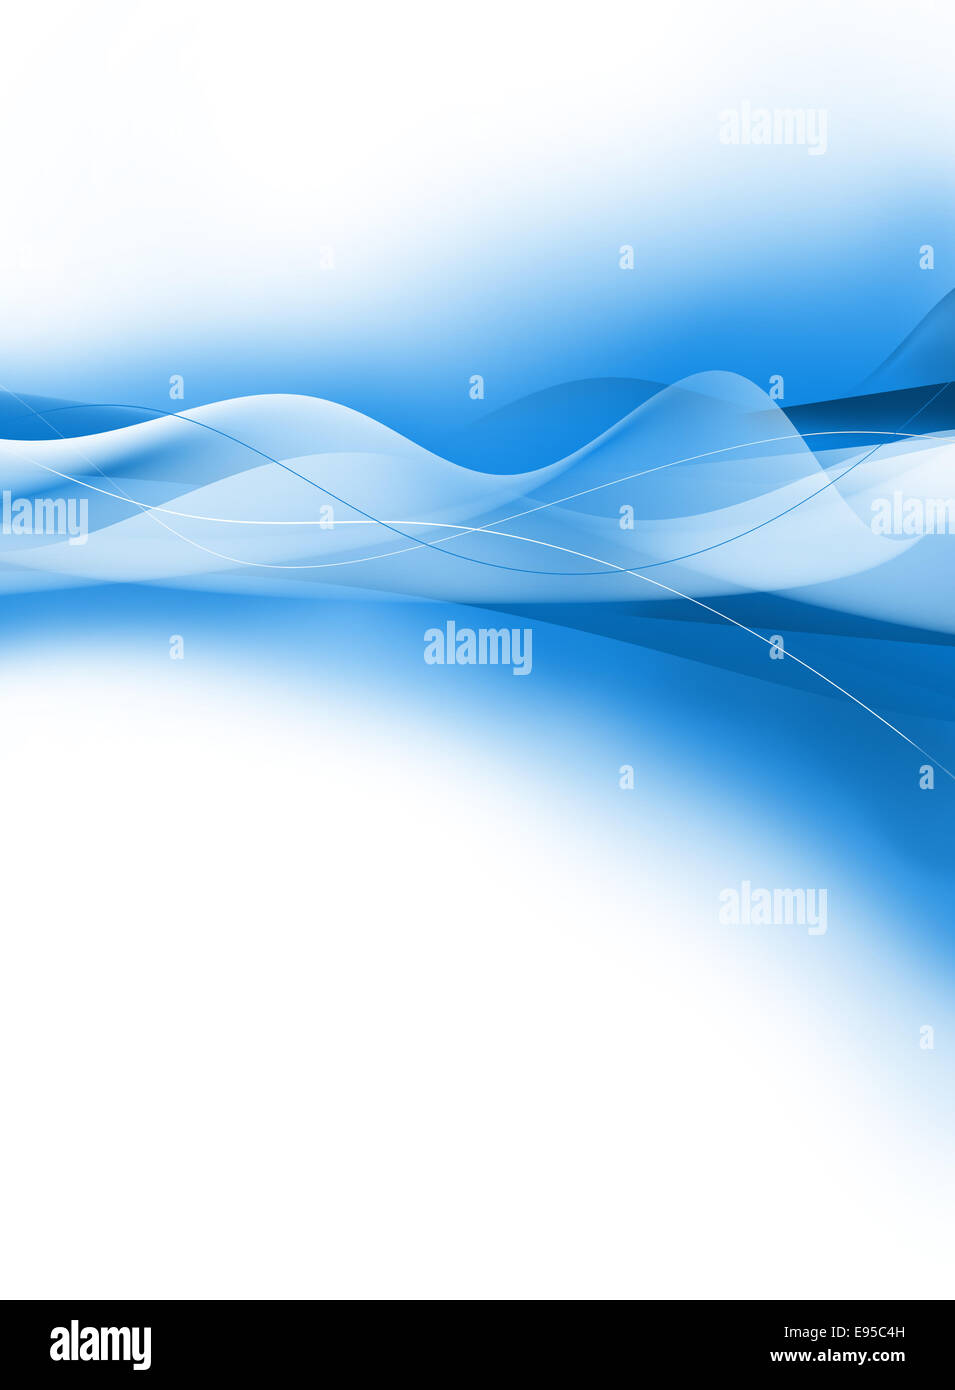 Blue abstract background,création numérique de l'image. Banque D'Images